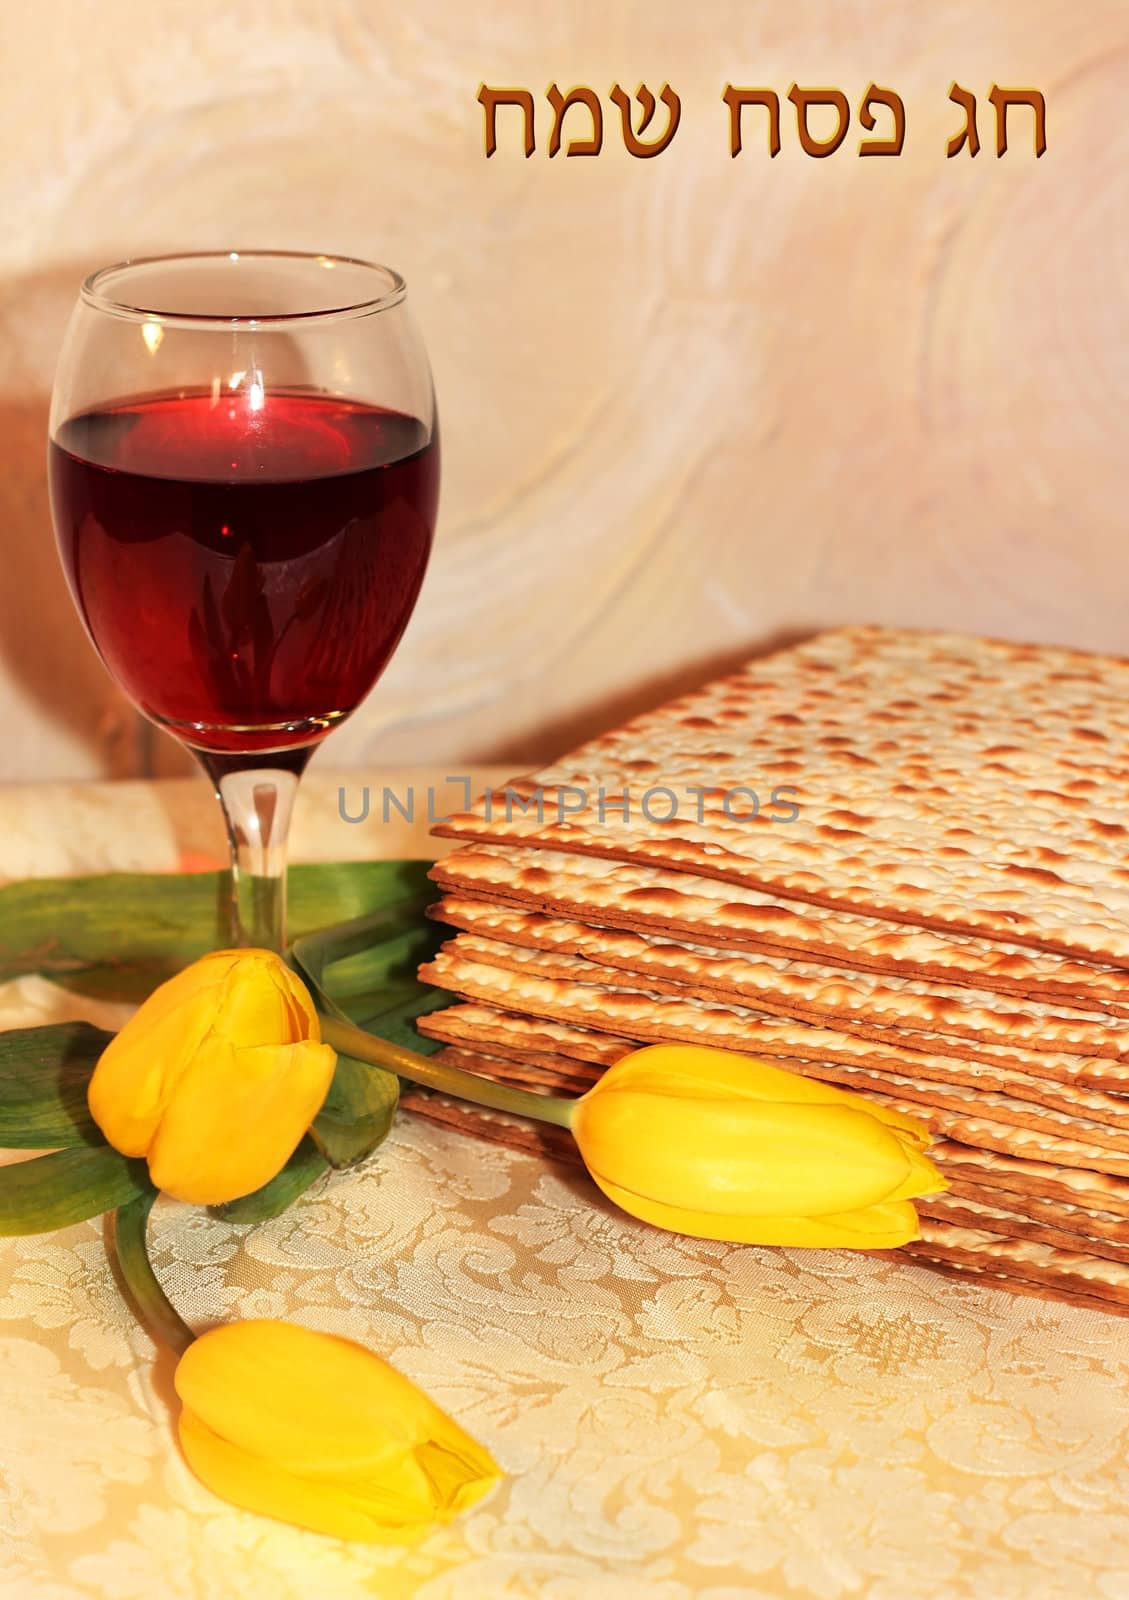 jewish holiday of Passover by irisphoto4